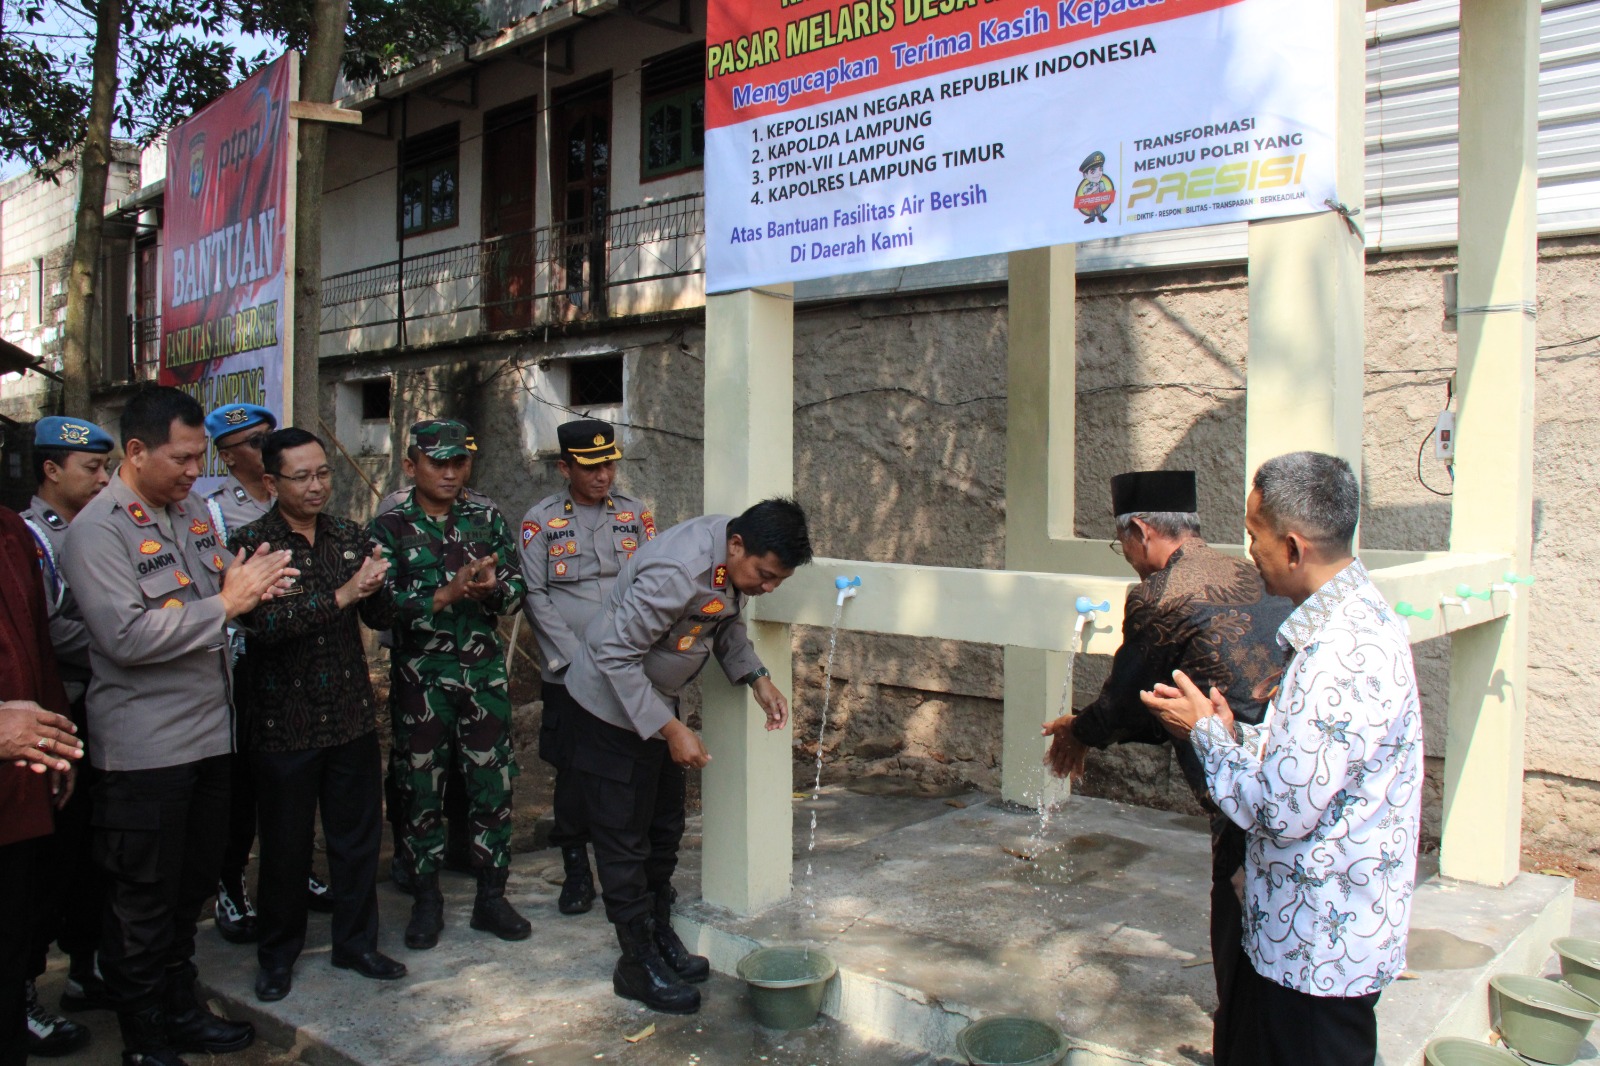 PTPN VII-Polda Lampung Serahkan Bantuan Fasilitas Air Bersih di Desa Negeri Jemanten